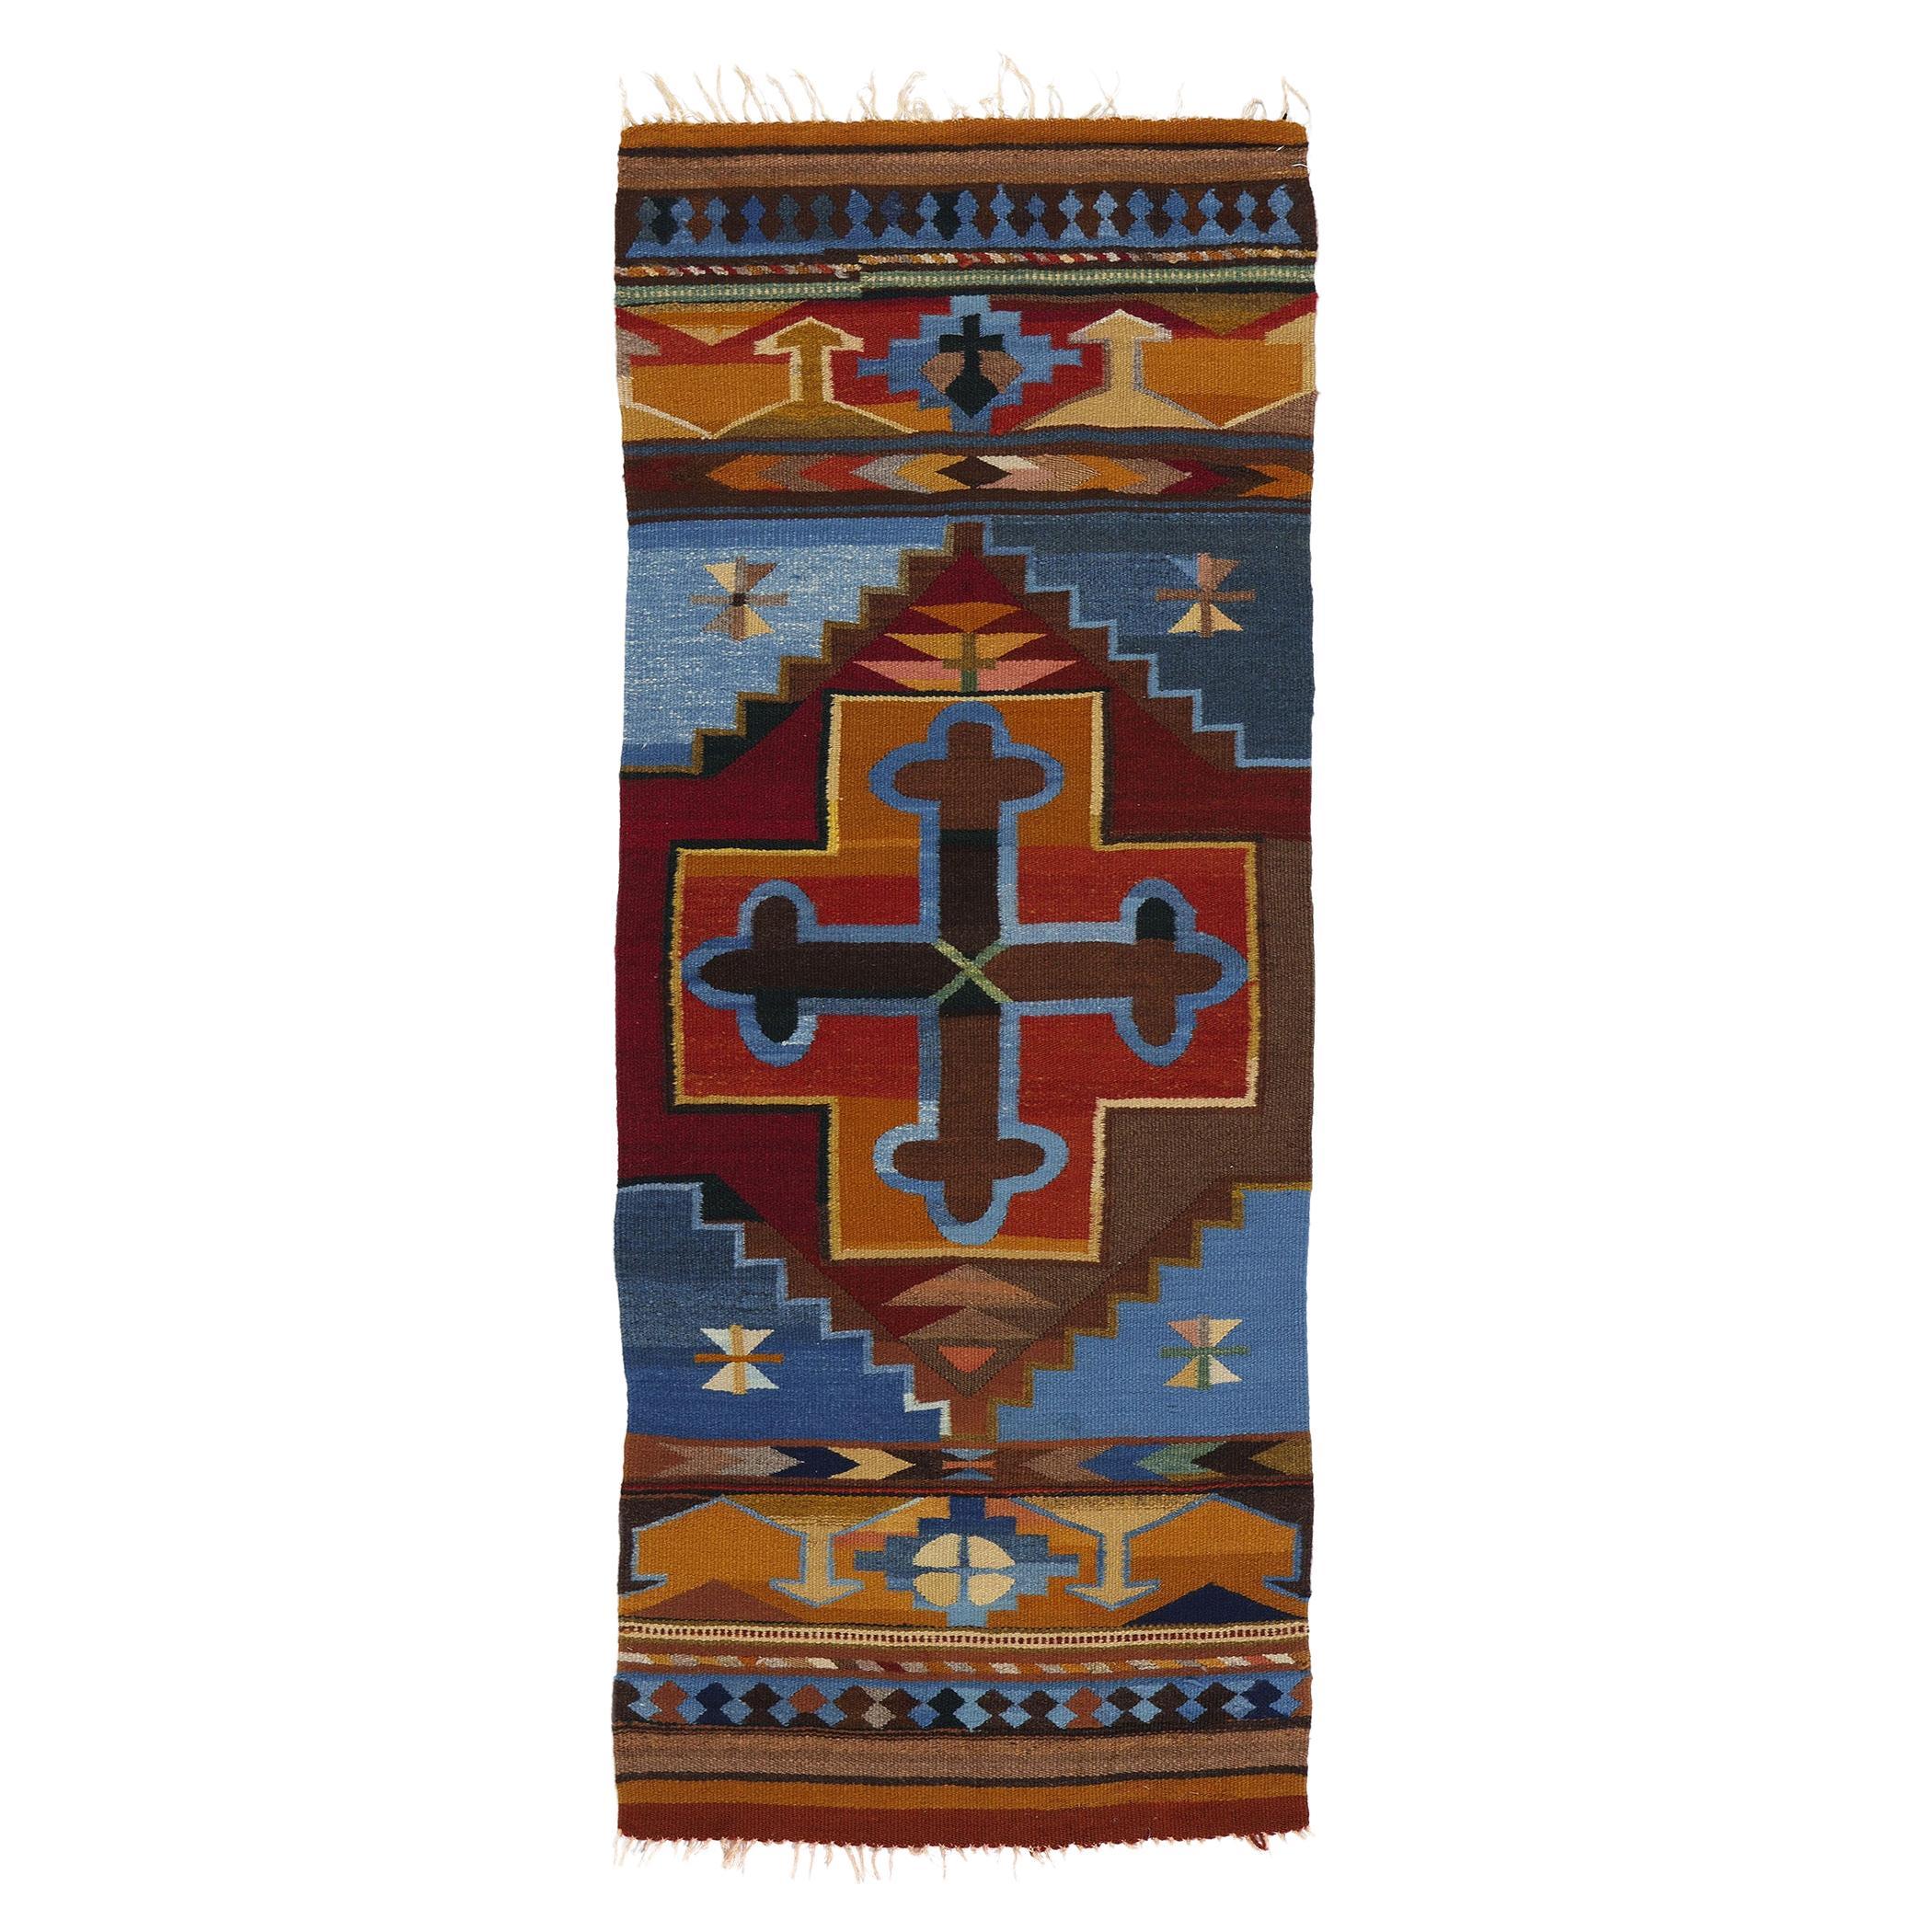  Türkischer Vintage-Kilim-Teppich, farbenfrohe Bohème trifft auf maßgeschneiderte Eleganz